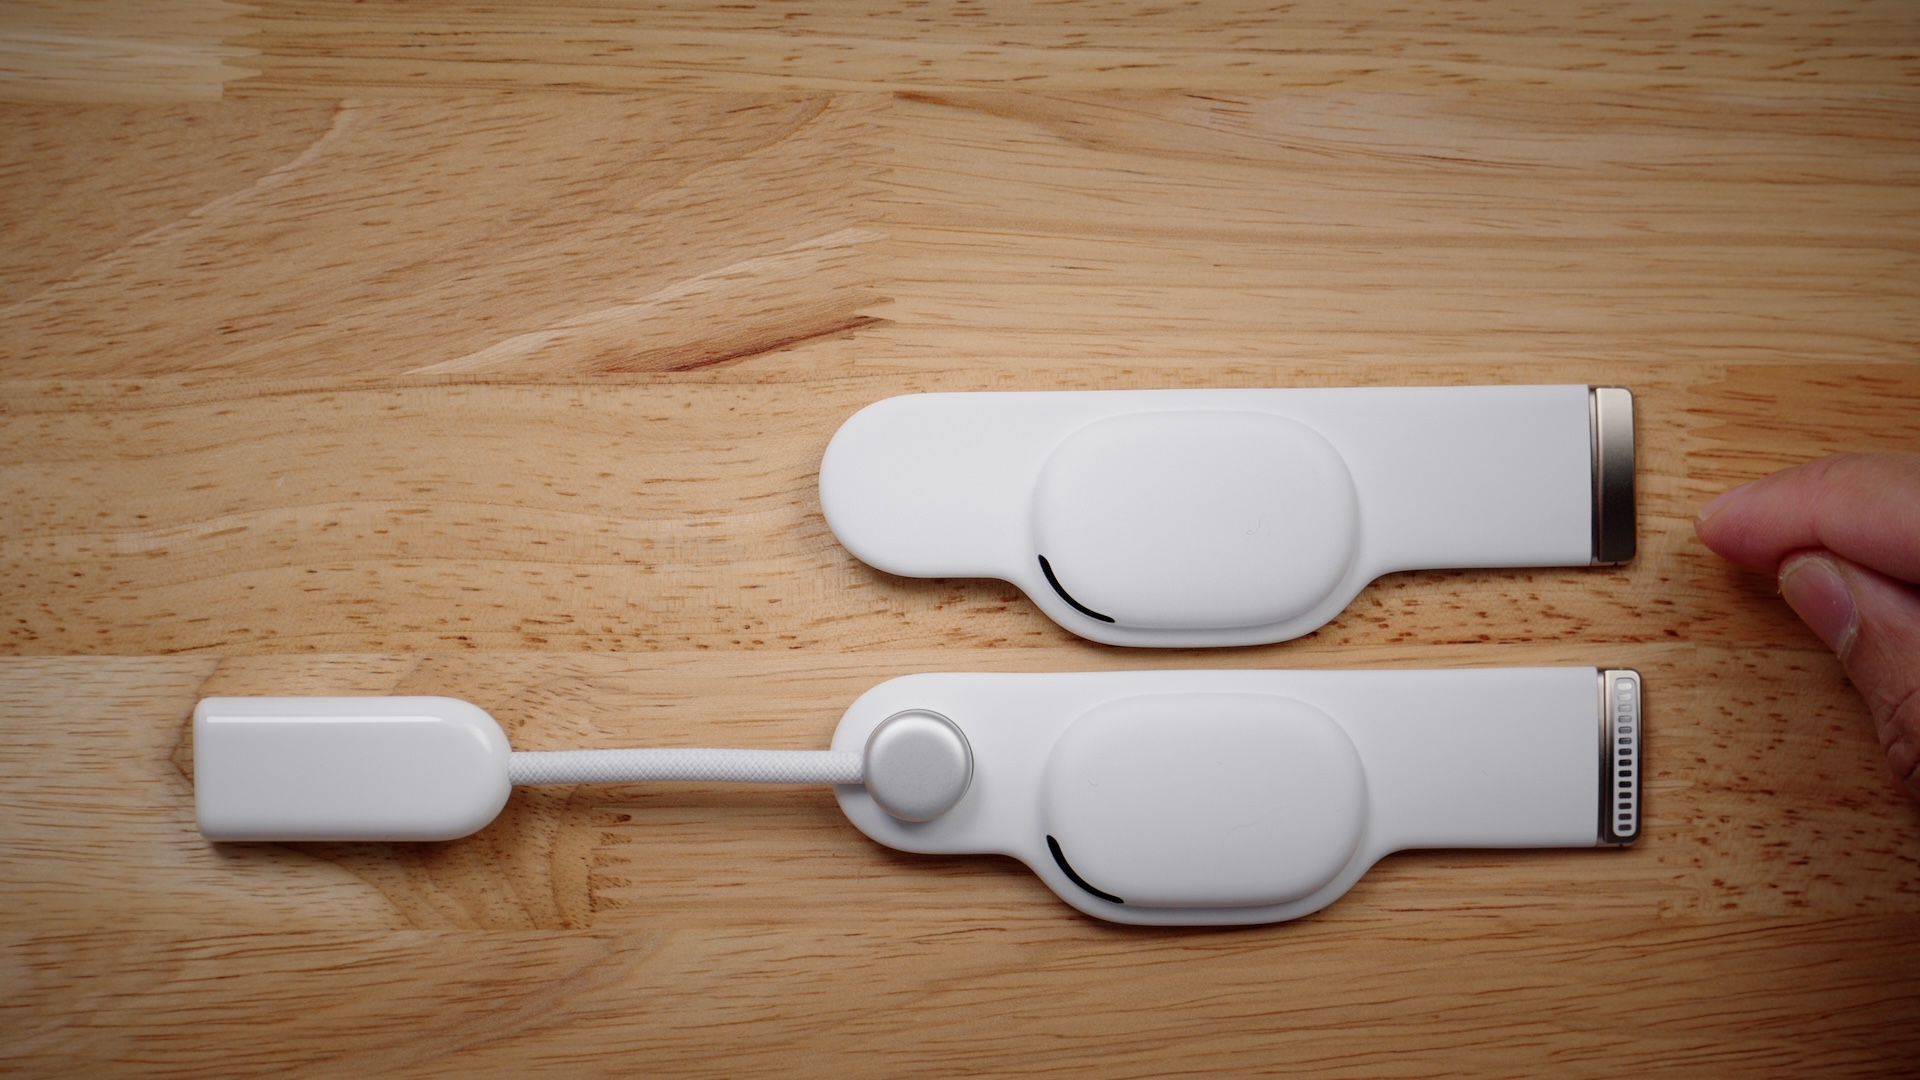 Ремень разработчика Apple Vision Pro по сравнению с ремешком Audio Strap на столе снаружи